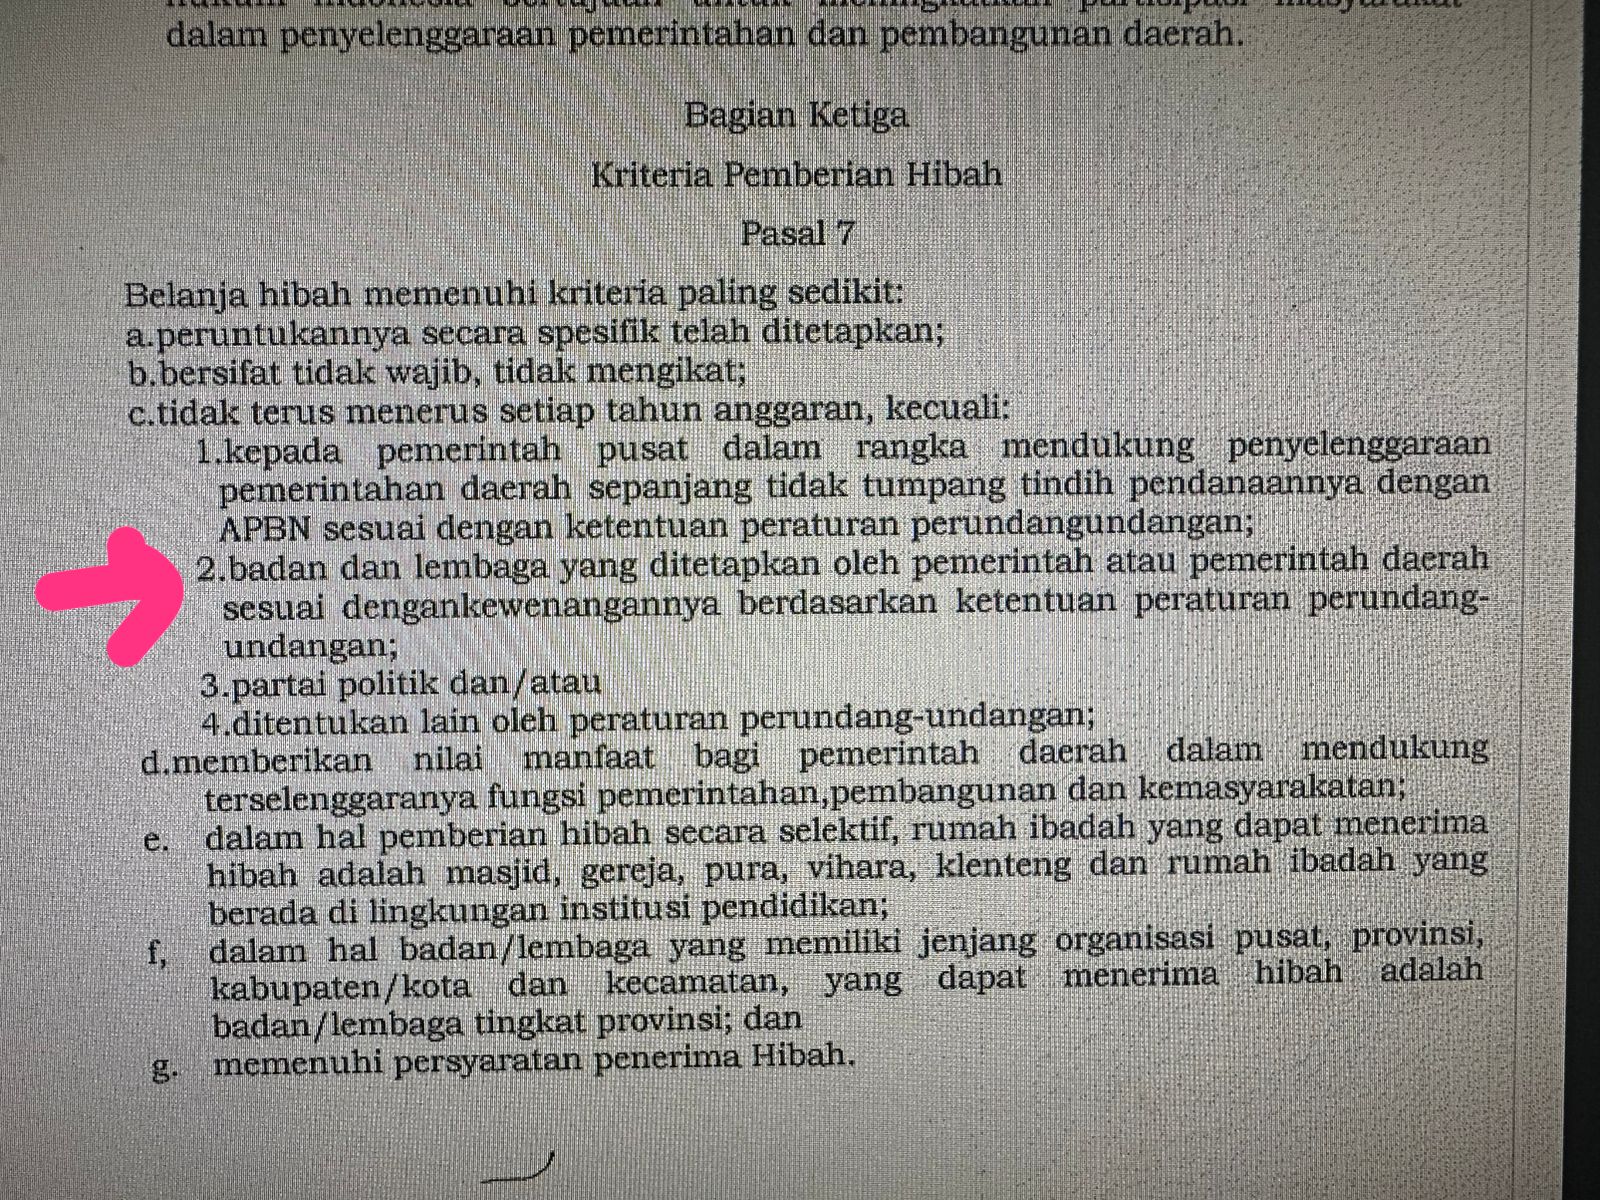 Cuplikan Peraturan Gubernur Kalimantan Barat Nomor 151 Tahun 2021 tentang Pedoman Pemberian Hibah dan Bantuan Sosial yang Bersumber dari Anggaran Pendapatan dan Belanja Daerah Provinsi Kalimantan Barat.